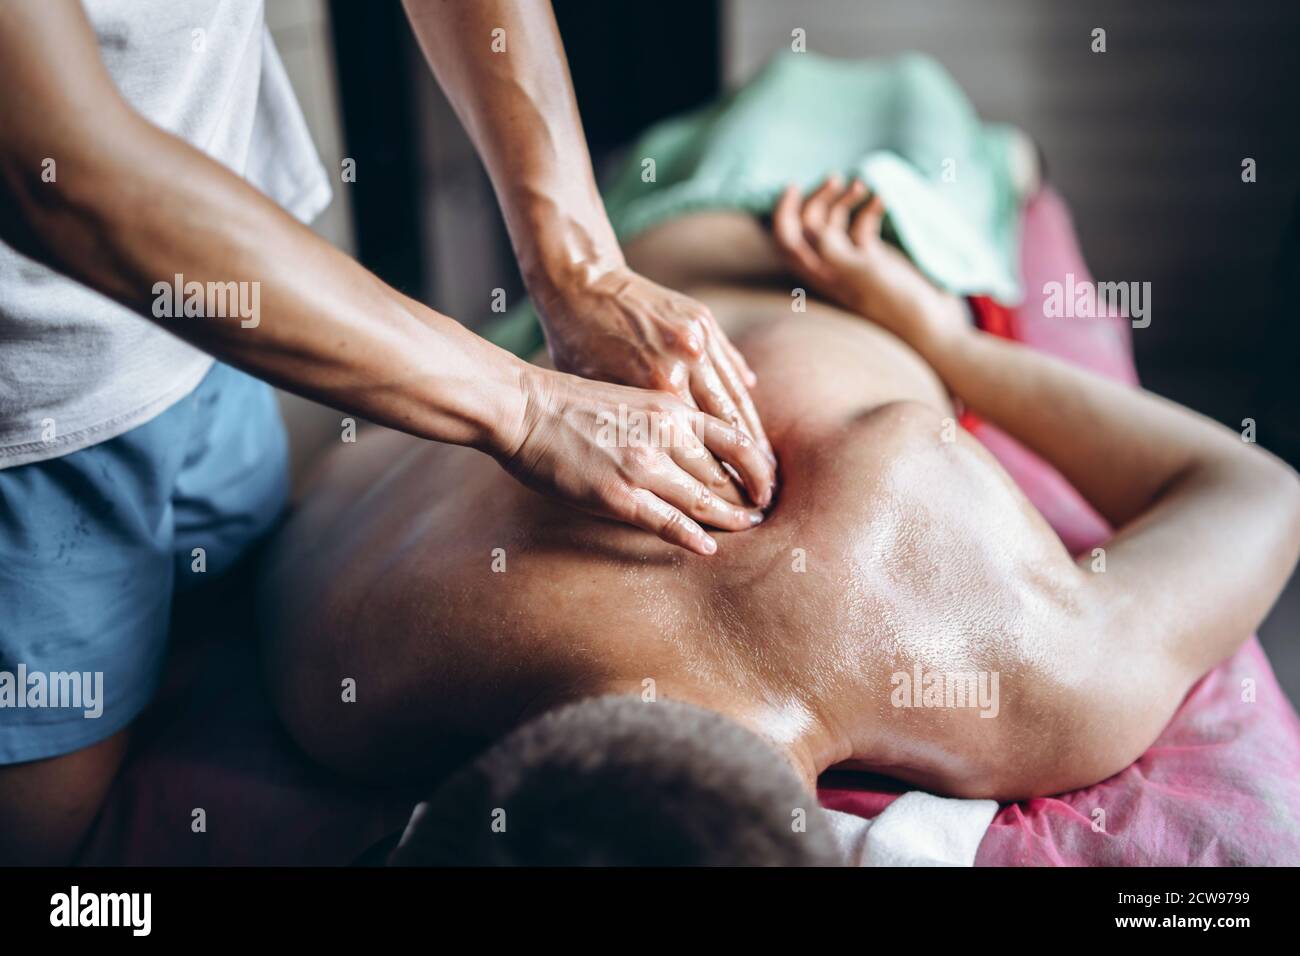 Une femme physiothérapeute faisant un massage de dos pour un homme dans le bureau médical. Gros plan des mains massant. Banque D'Images